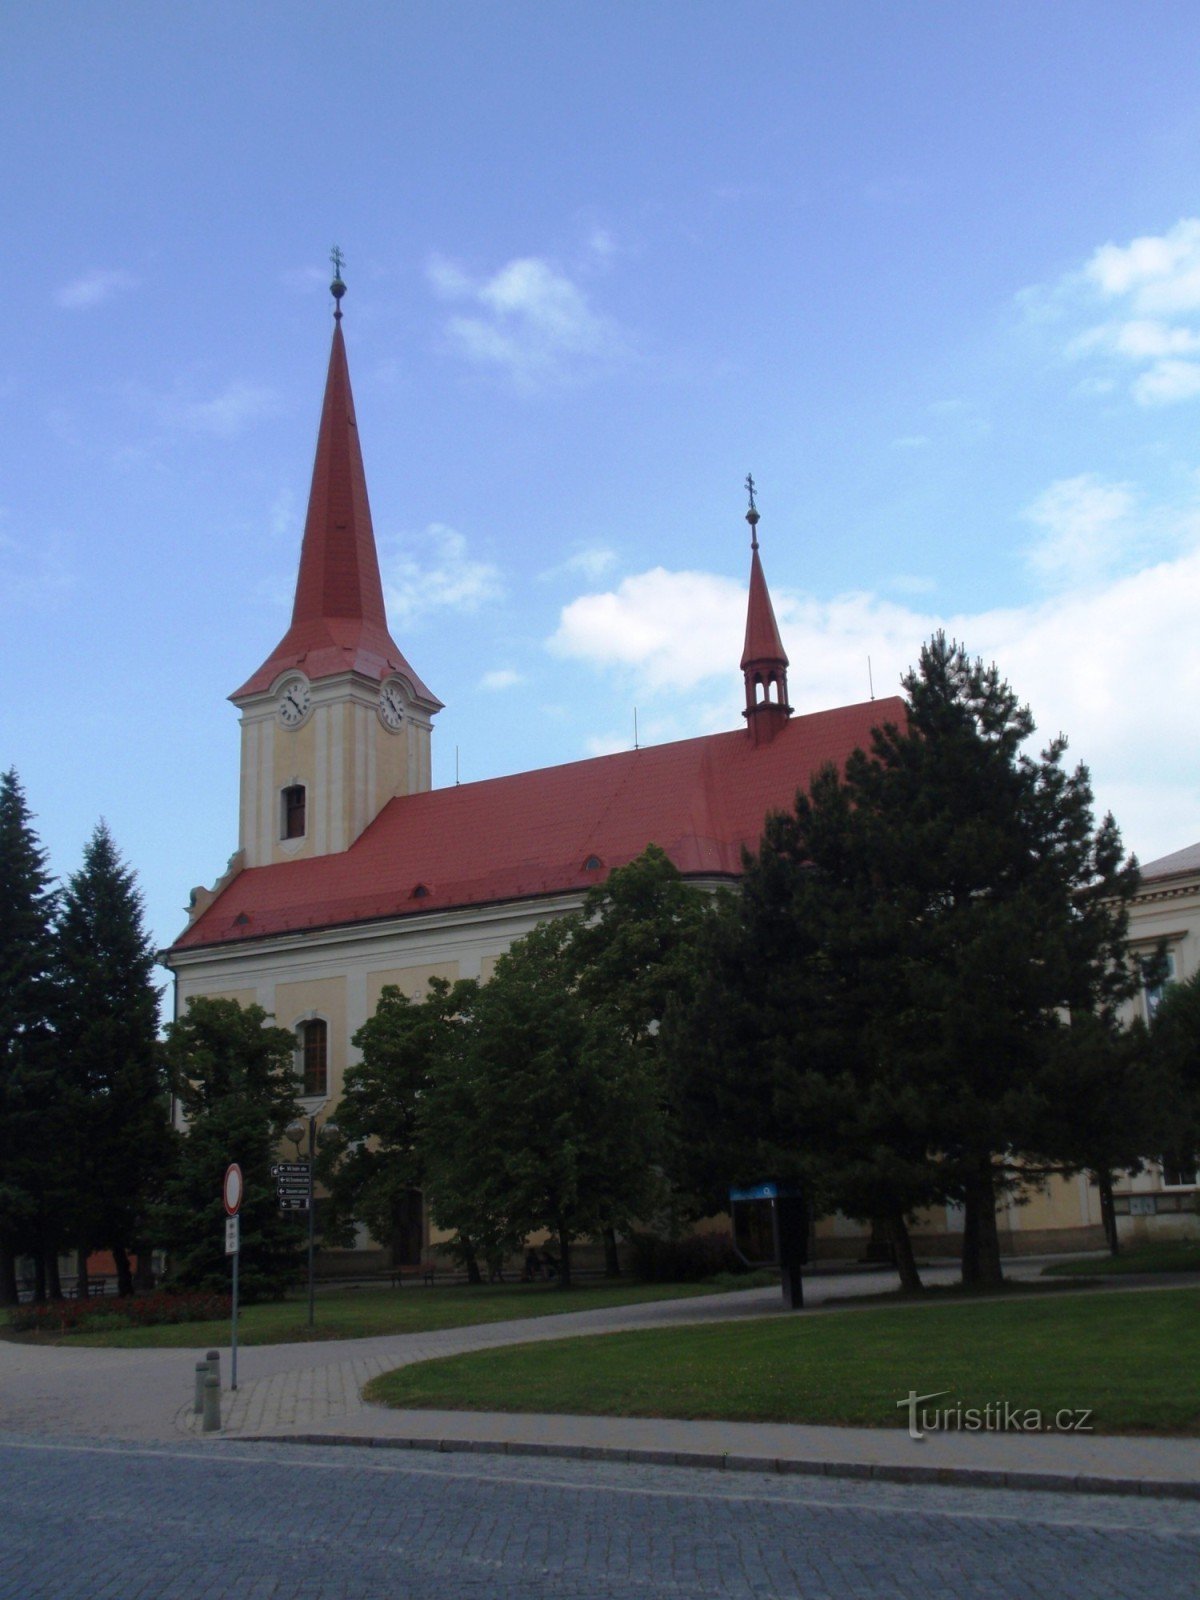 Церковь св. Jiljí in Bystřice pod Hostýnem